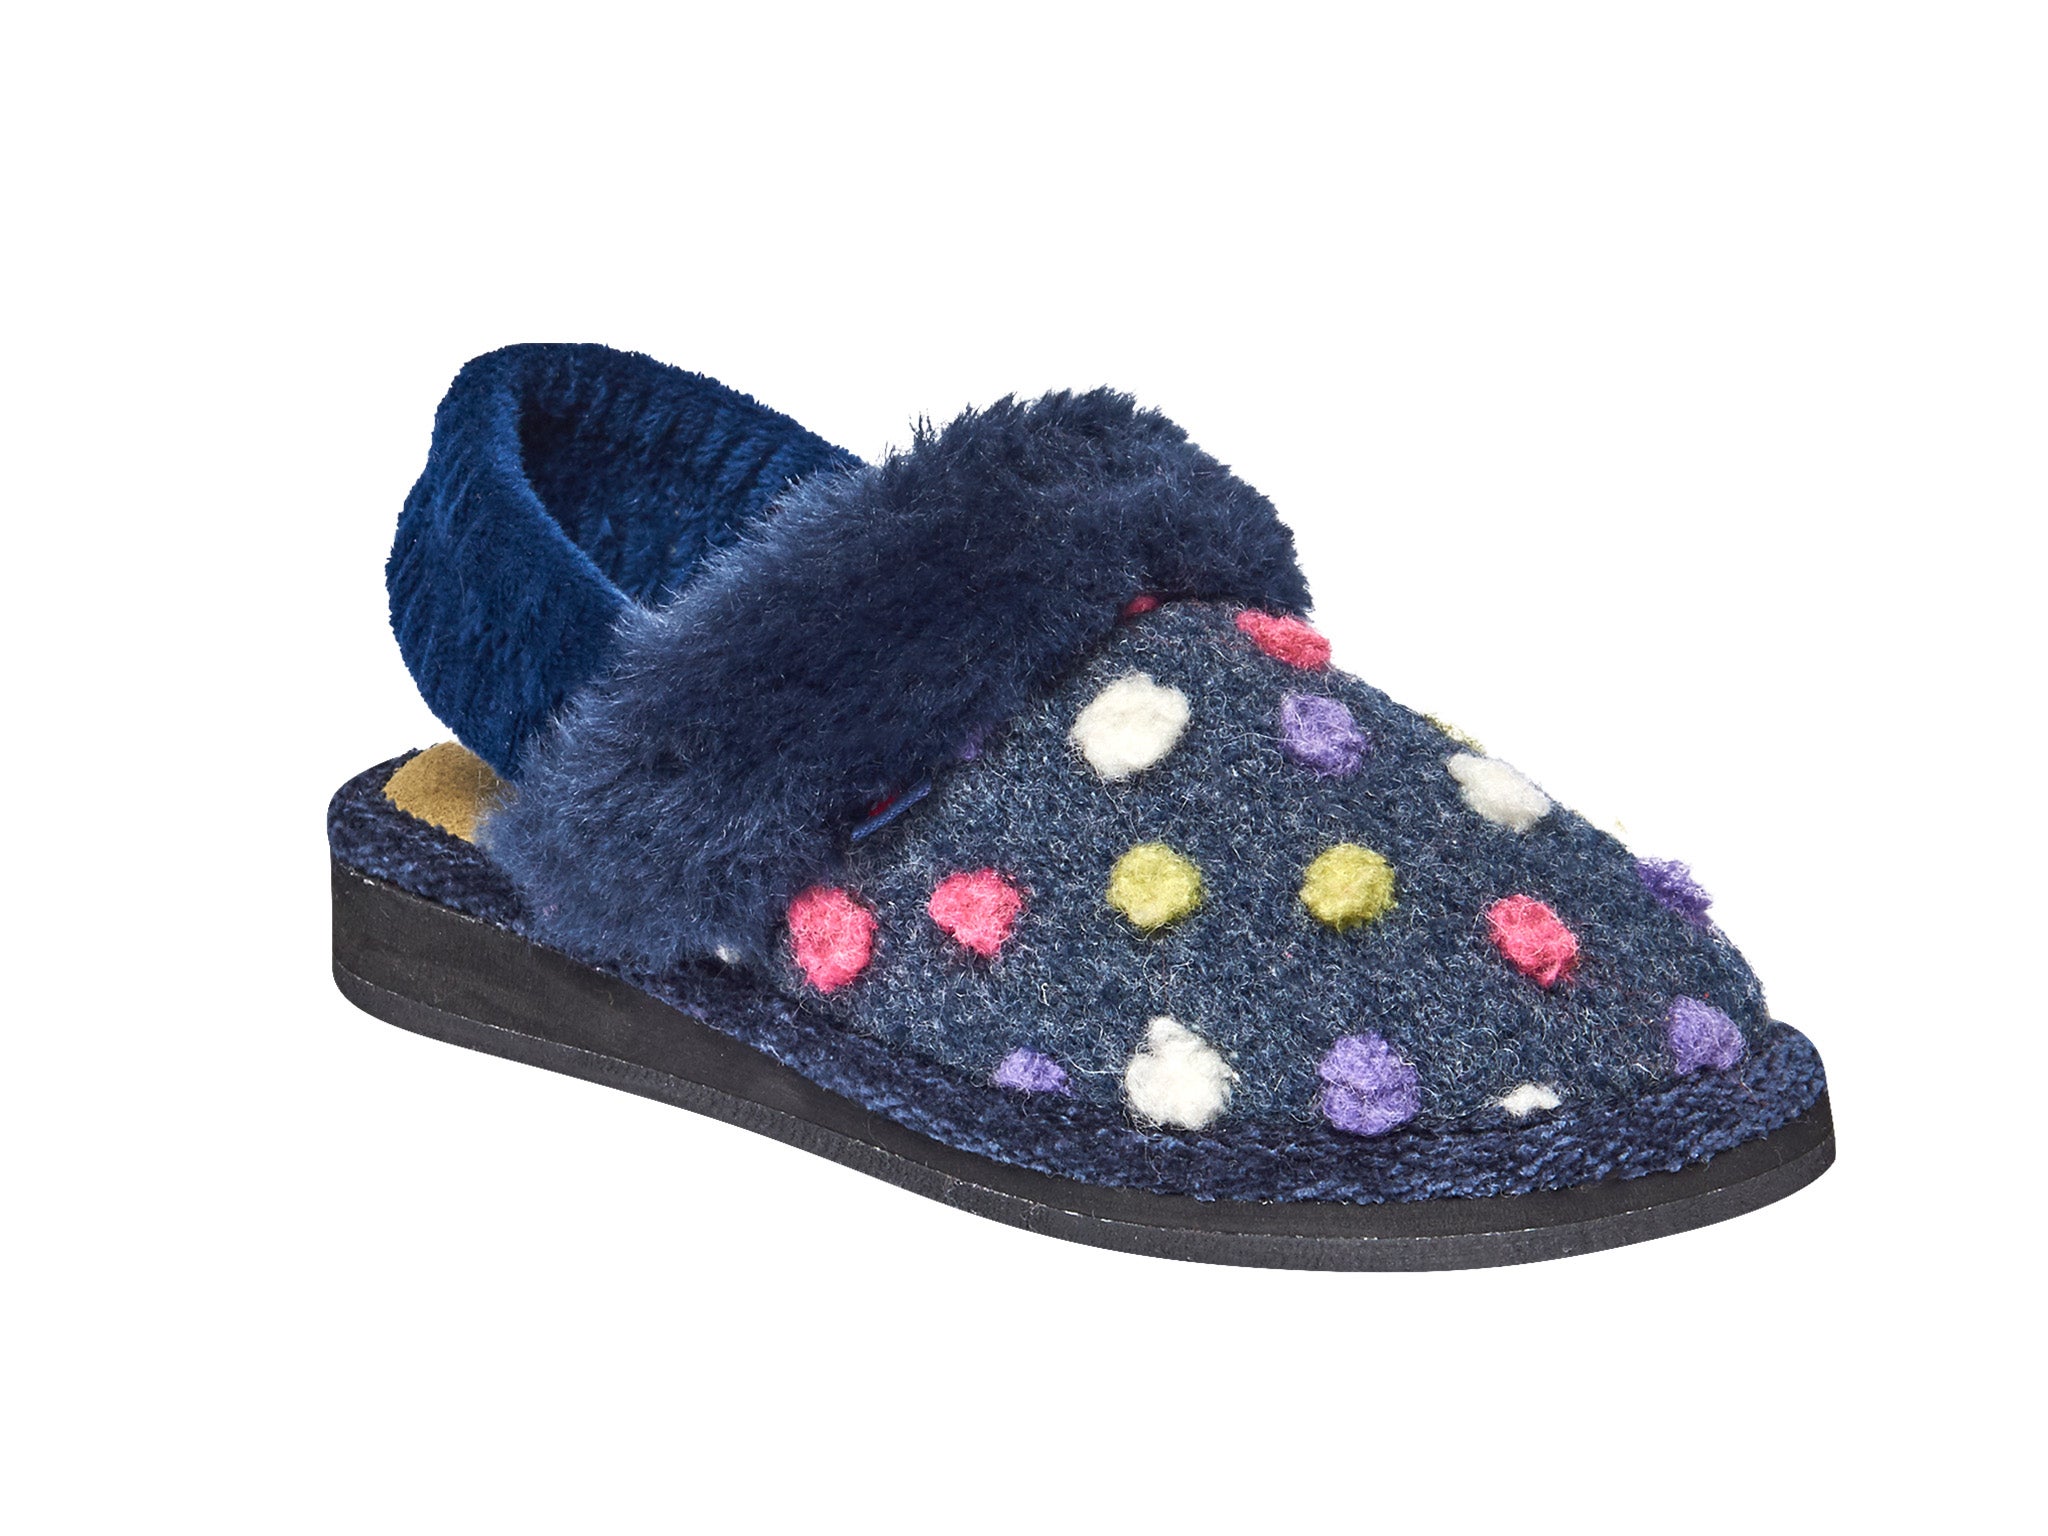 Moshulu spotty mule slippers